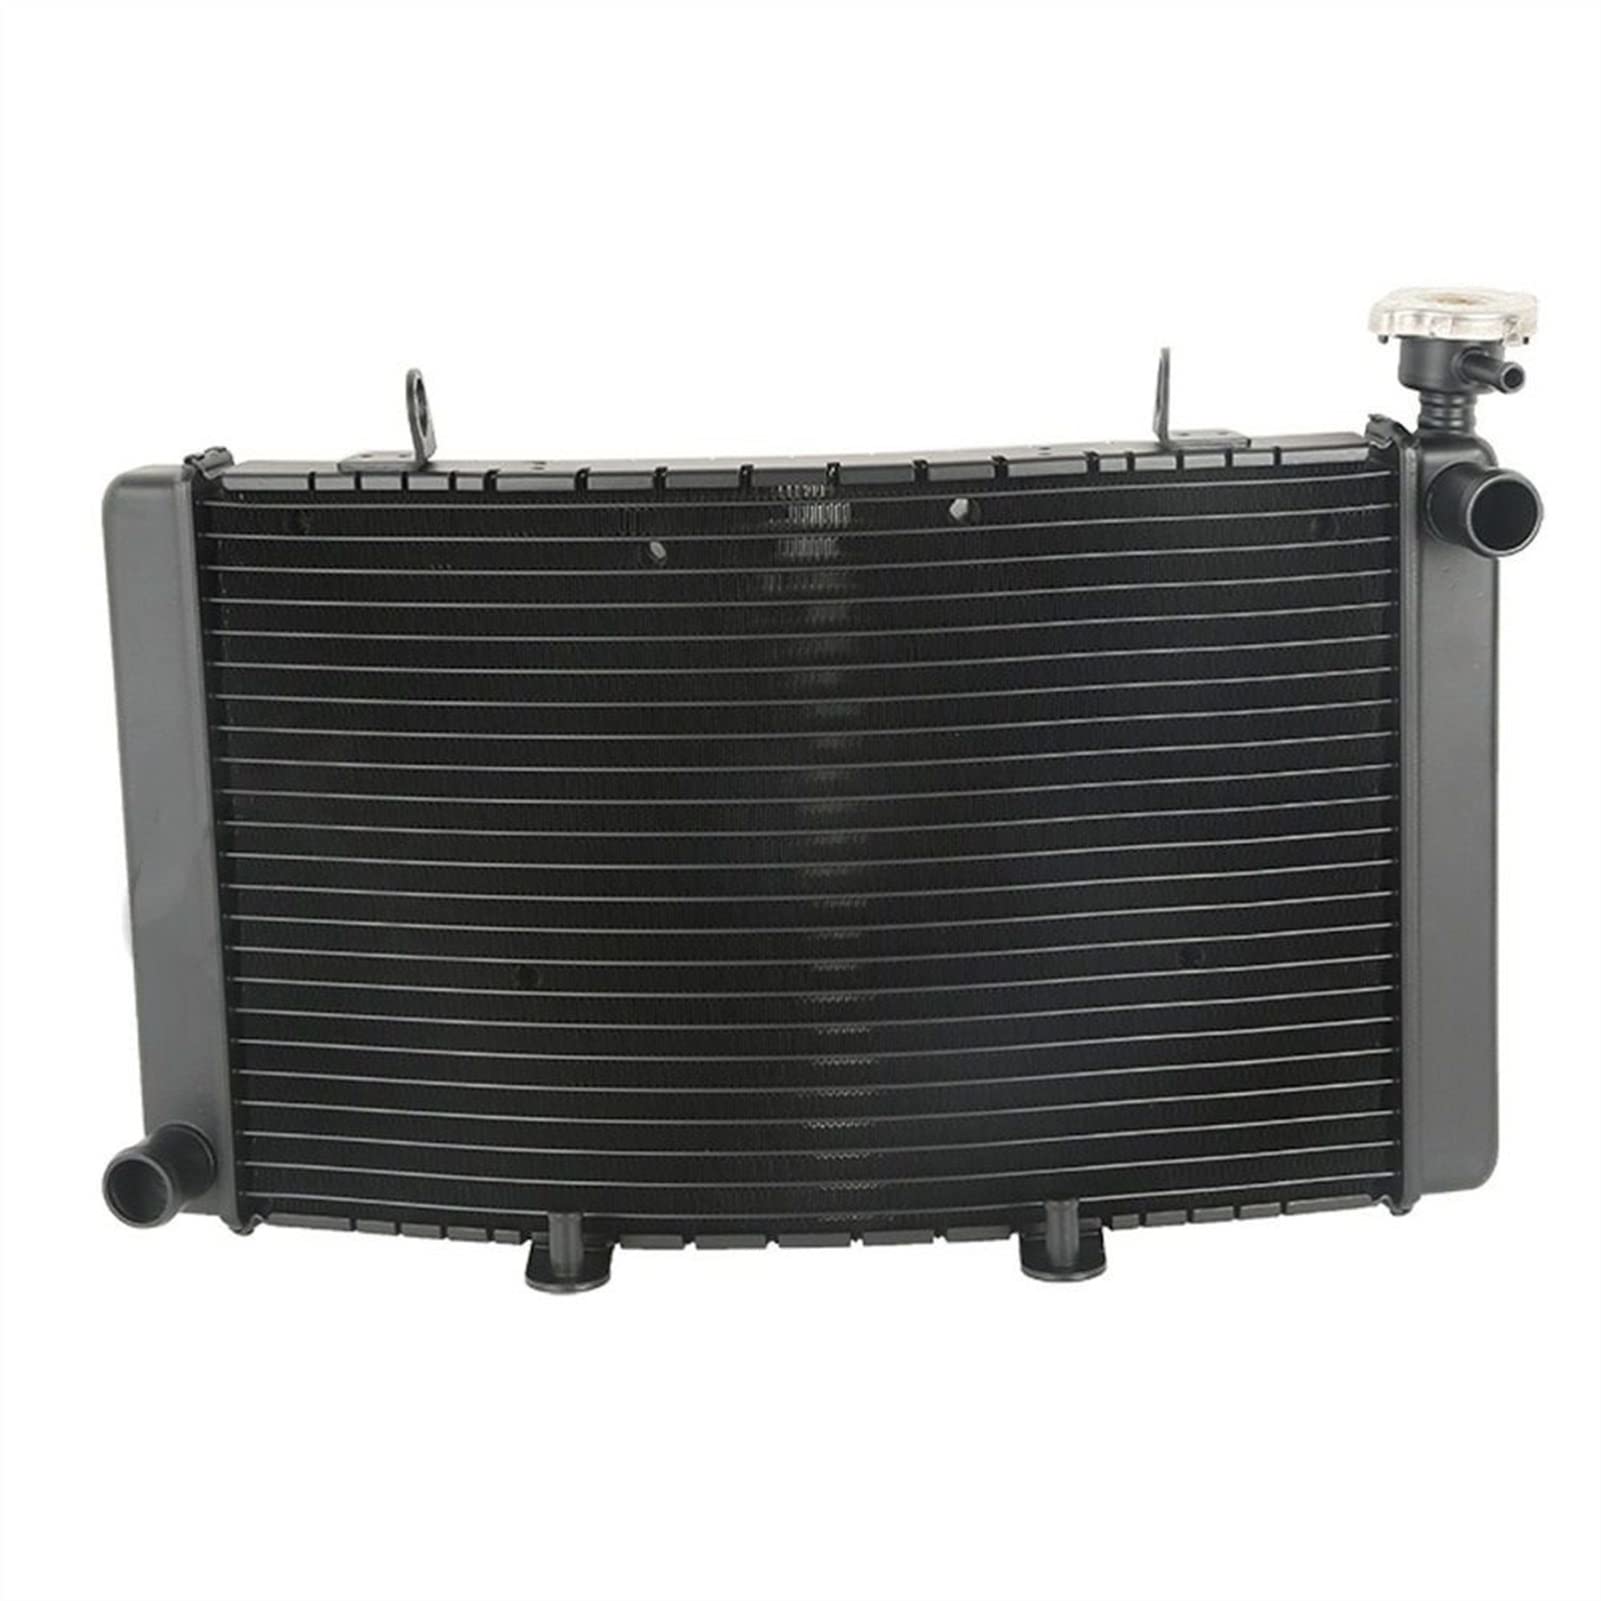 JINFOLI Motorrad Motor Kühler Kühler Kühlsystem, for Trek, 899 Ersatz Aluminium Motorkühler von JINFOLI